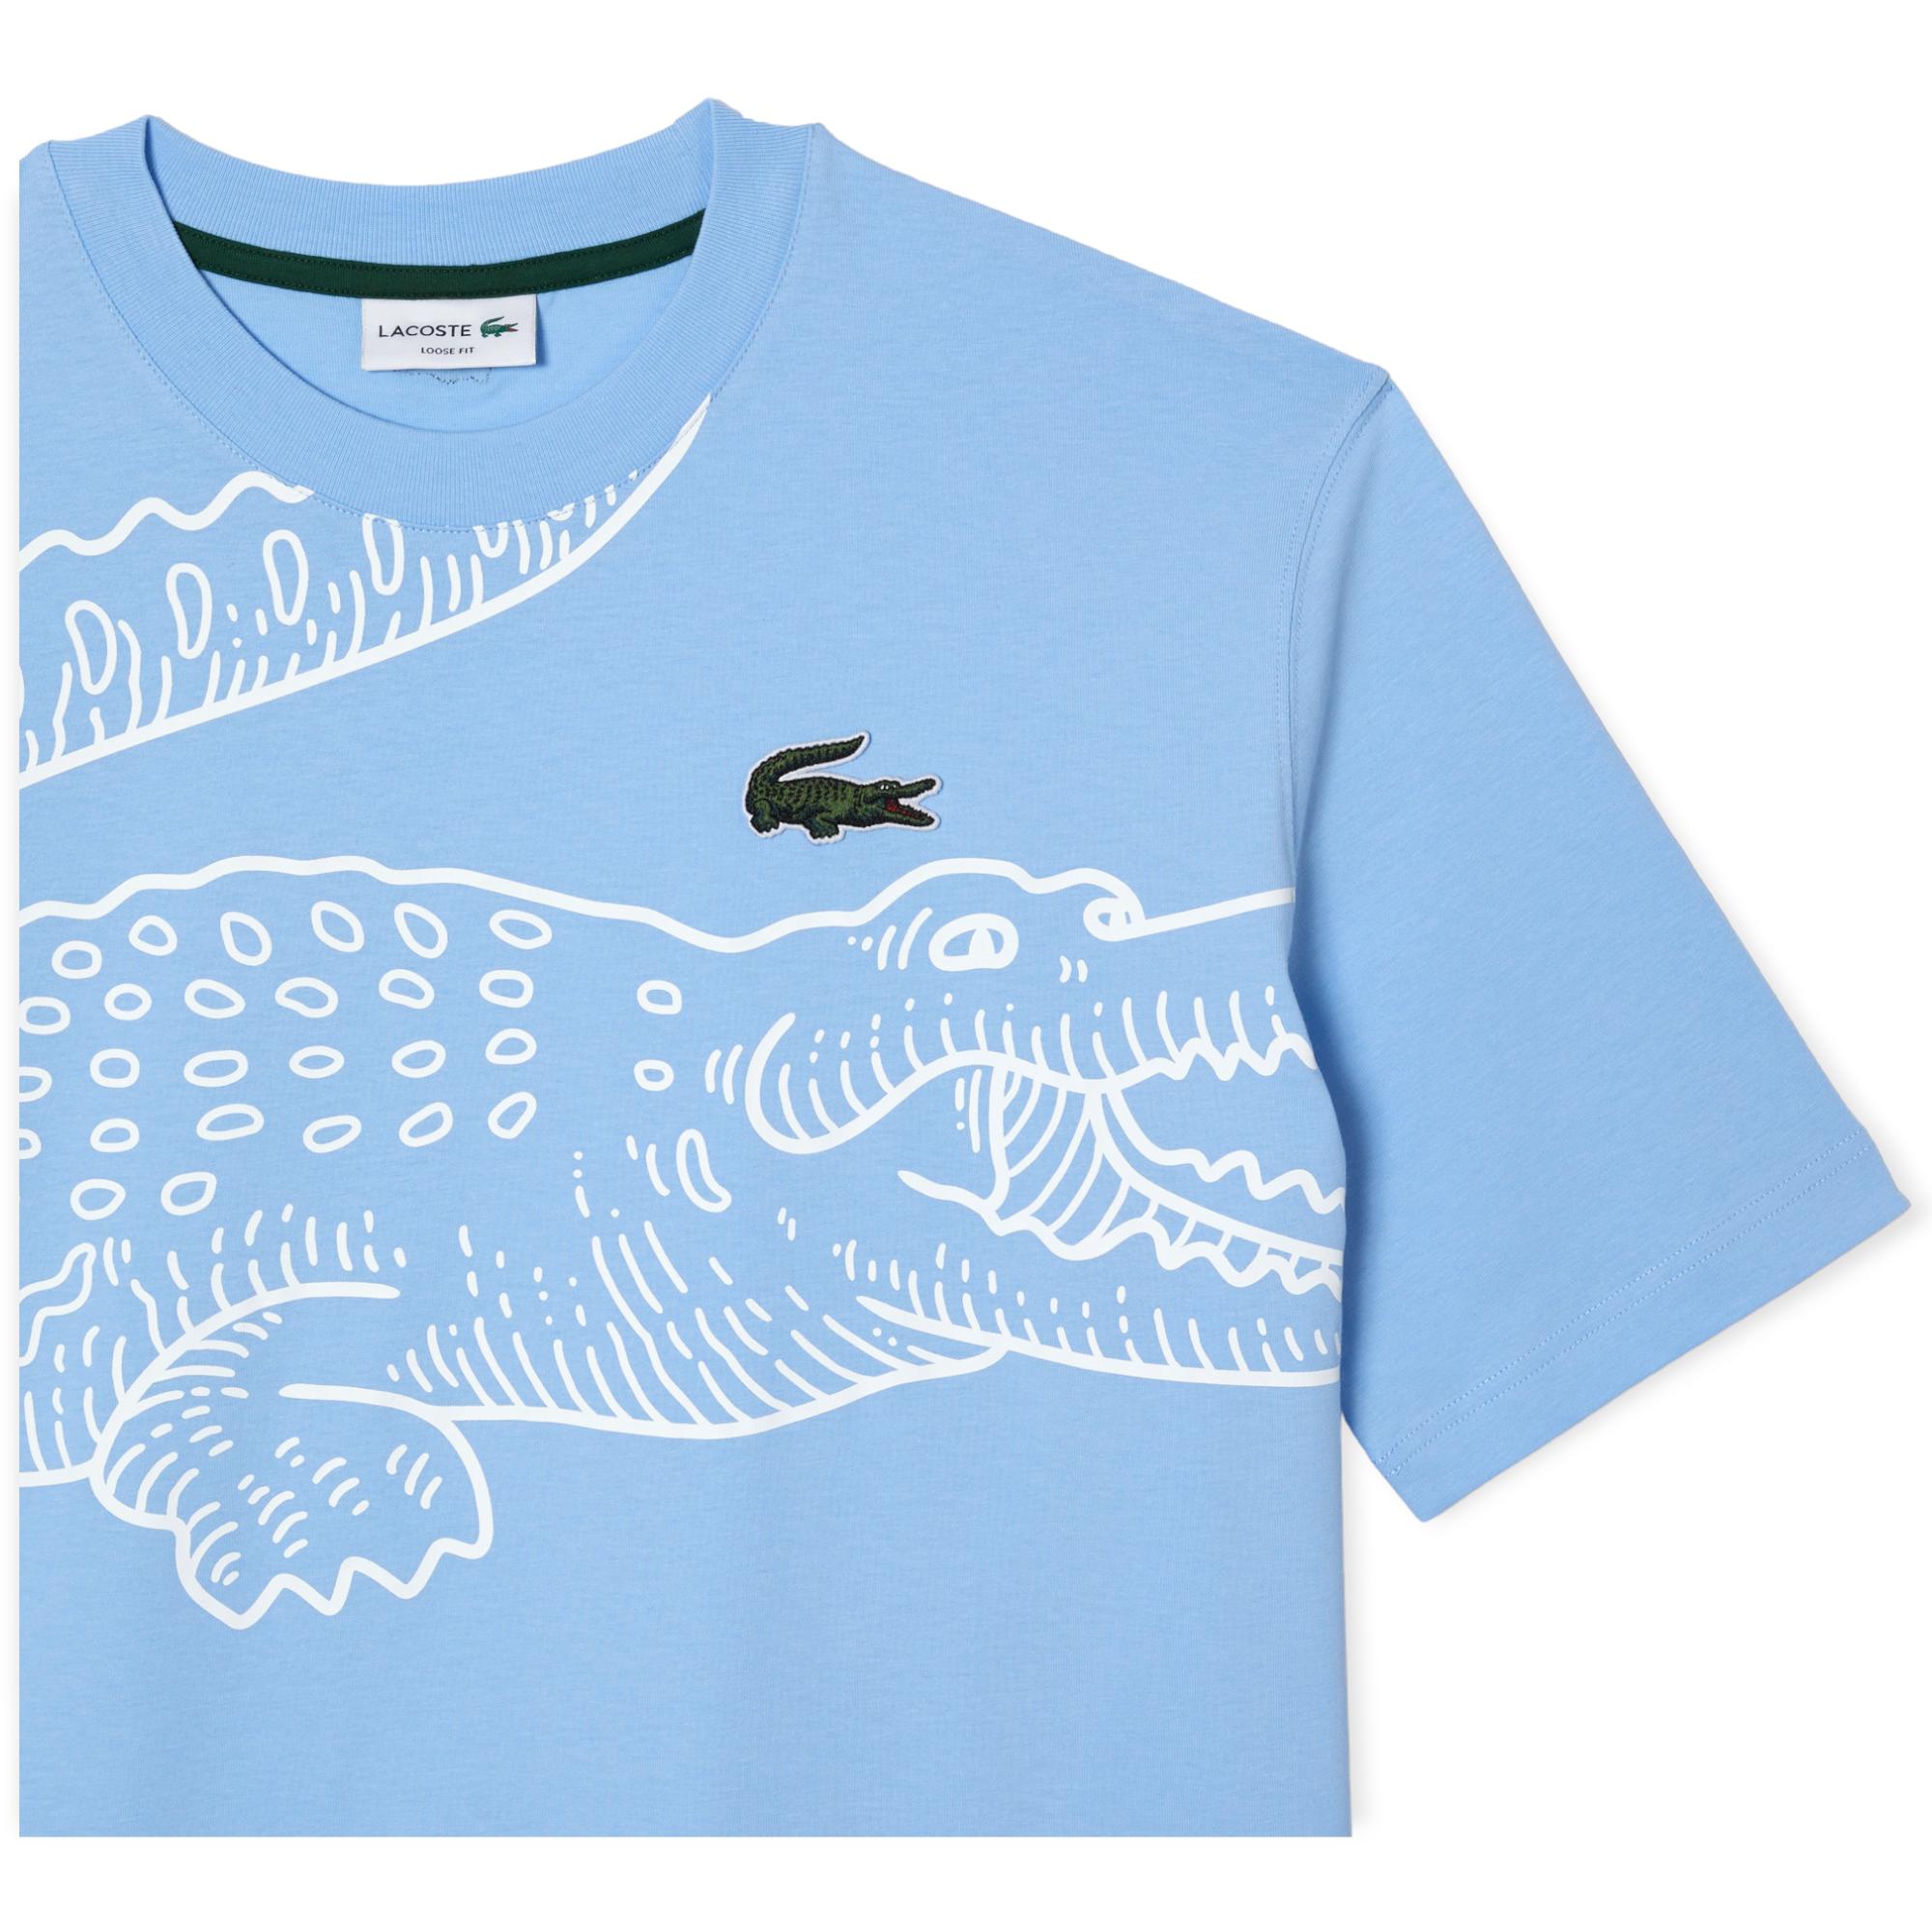 Lacoste Men Crew Neck Loose Fit Crocodile Print T-Shirt (Blue)-Nexus Clothing